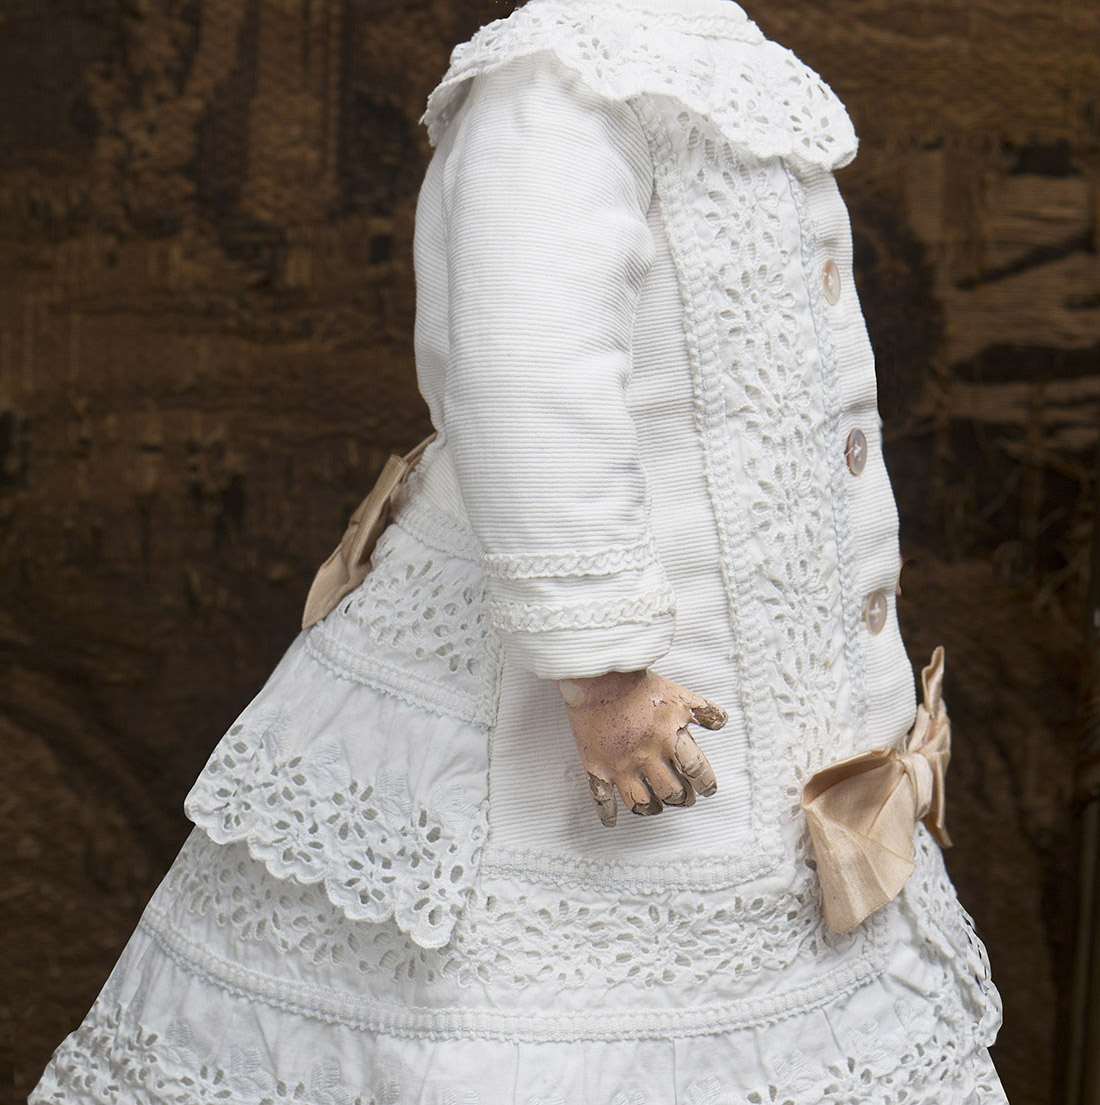 Antique Original Pique dress